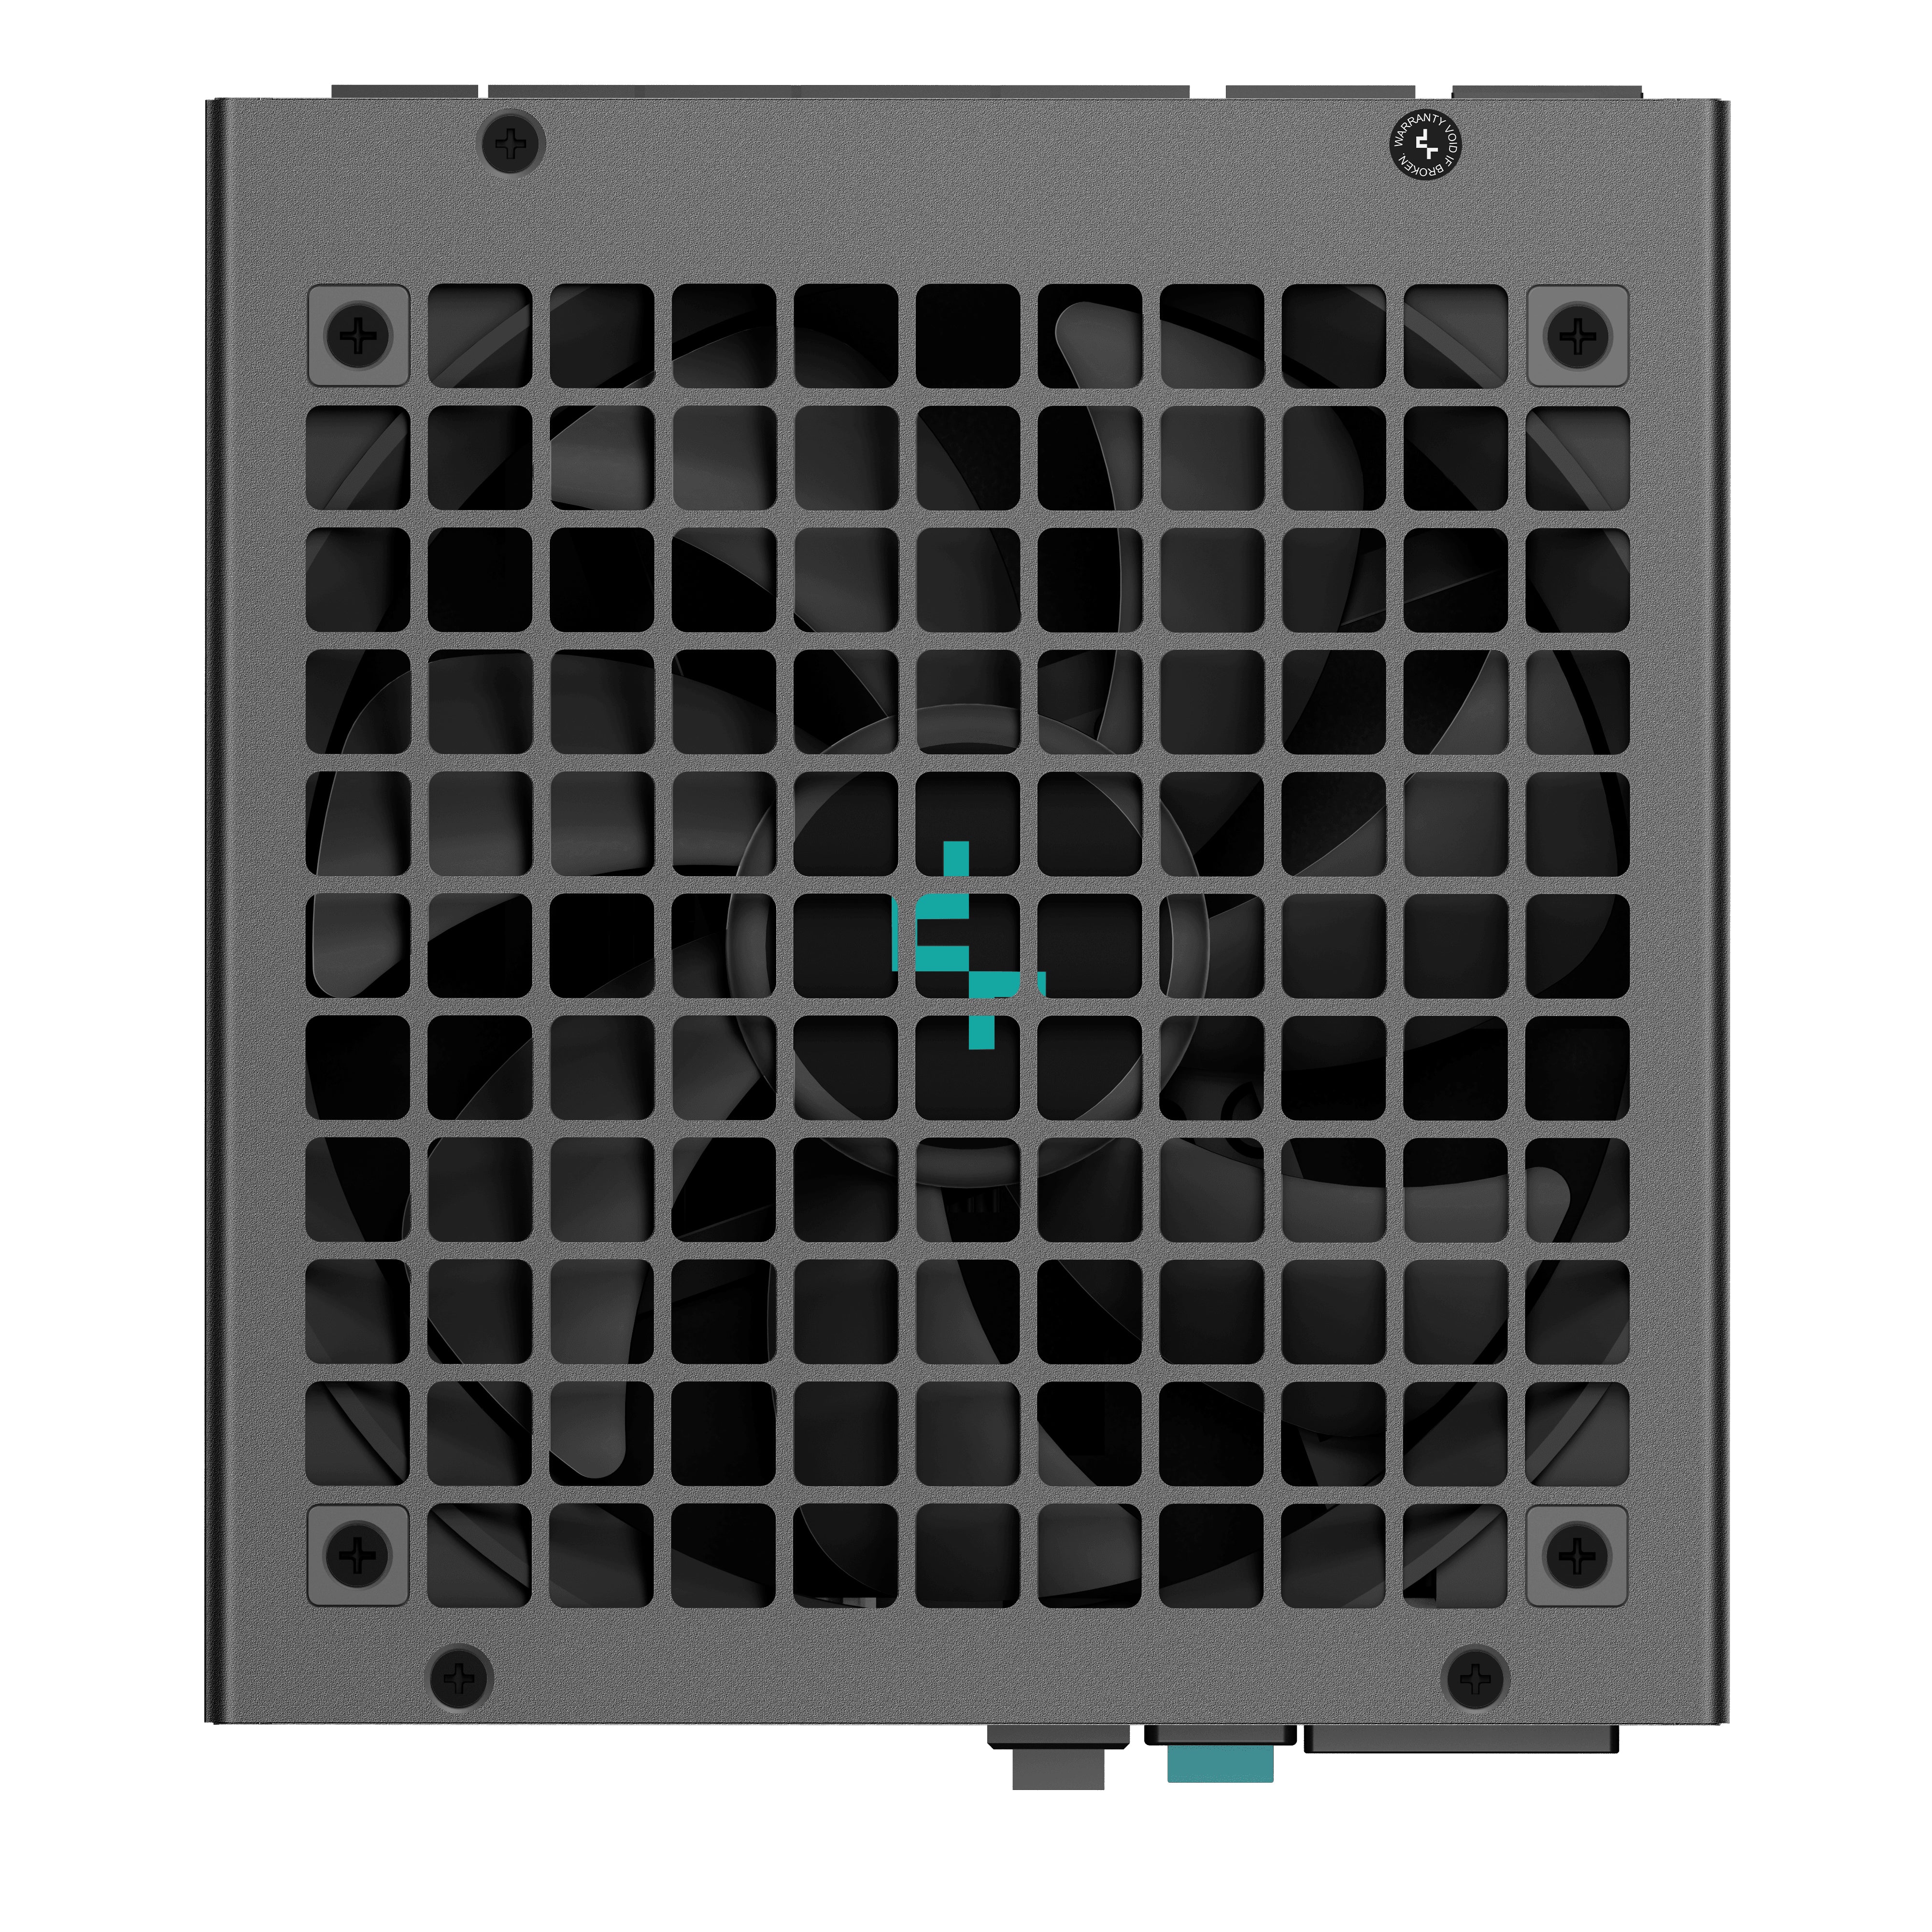 DeepCool PX850-G 850W - 80+ Gold ATX 3.0